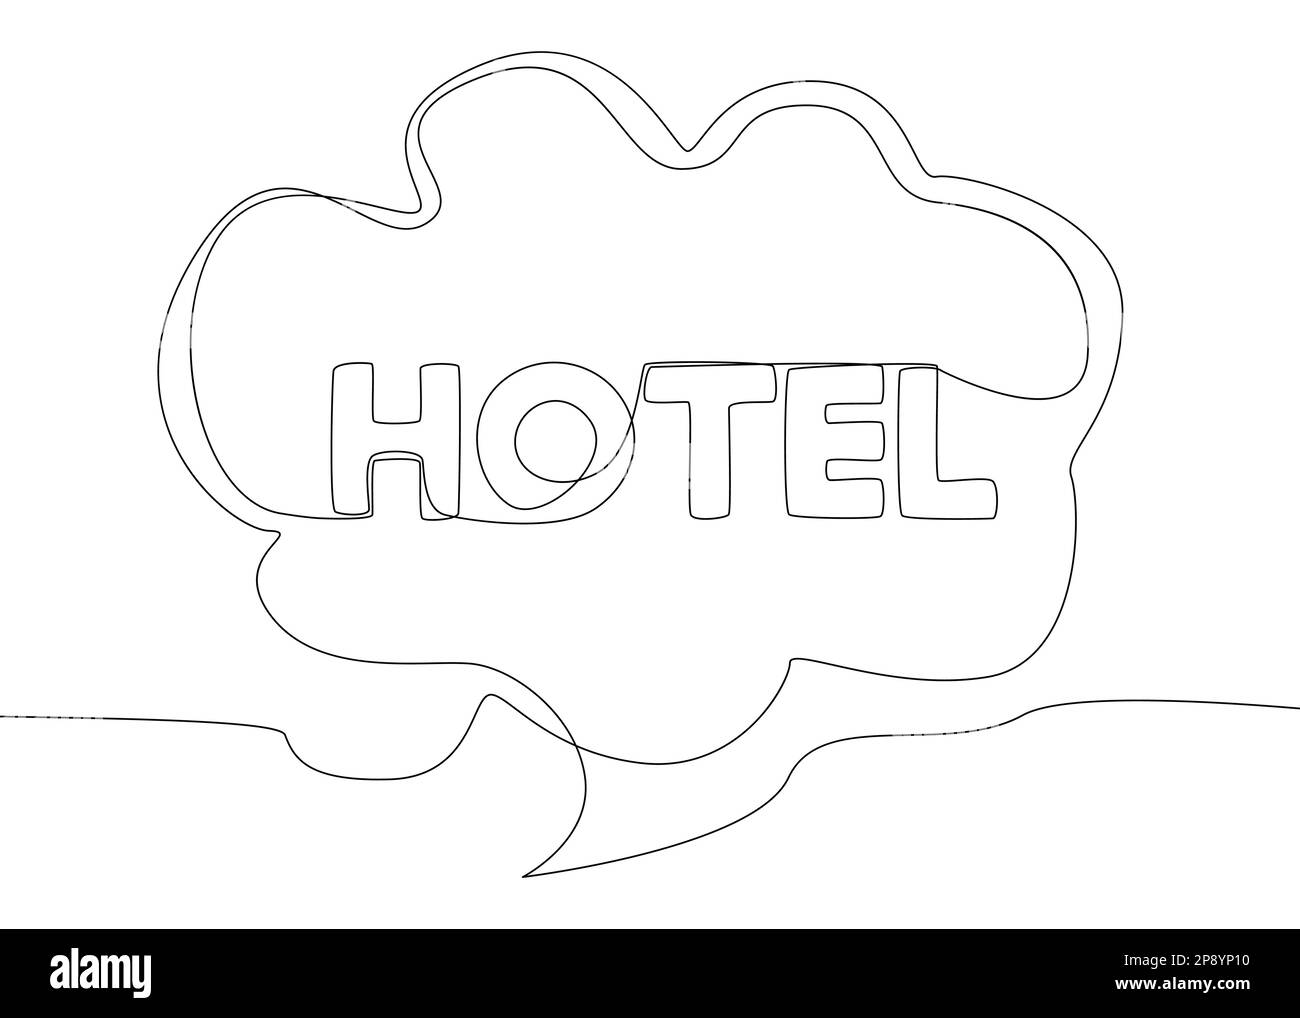 Una linea continua di fumetto con testo dell'hotel. Concetto di vettore di illustrazione a linea sottile. Disegno di contorno idee creative. Illustrazione Vettoriale